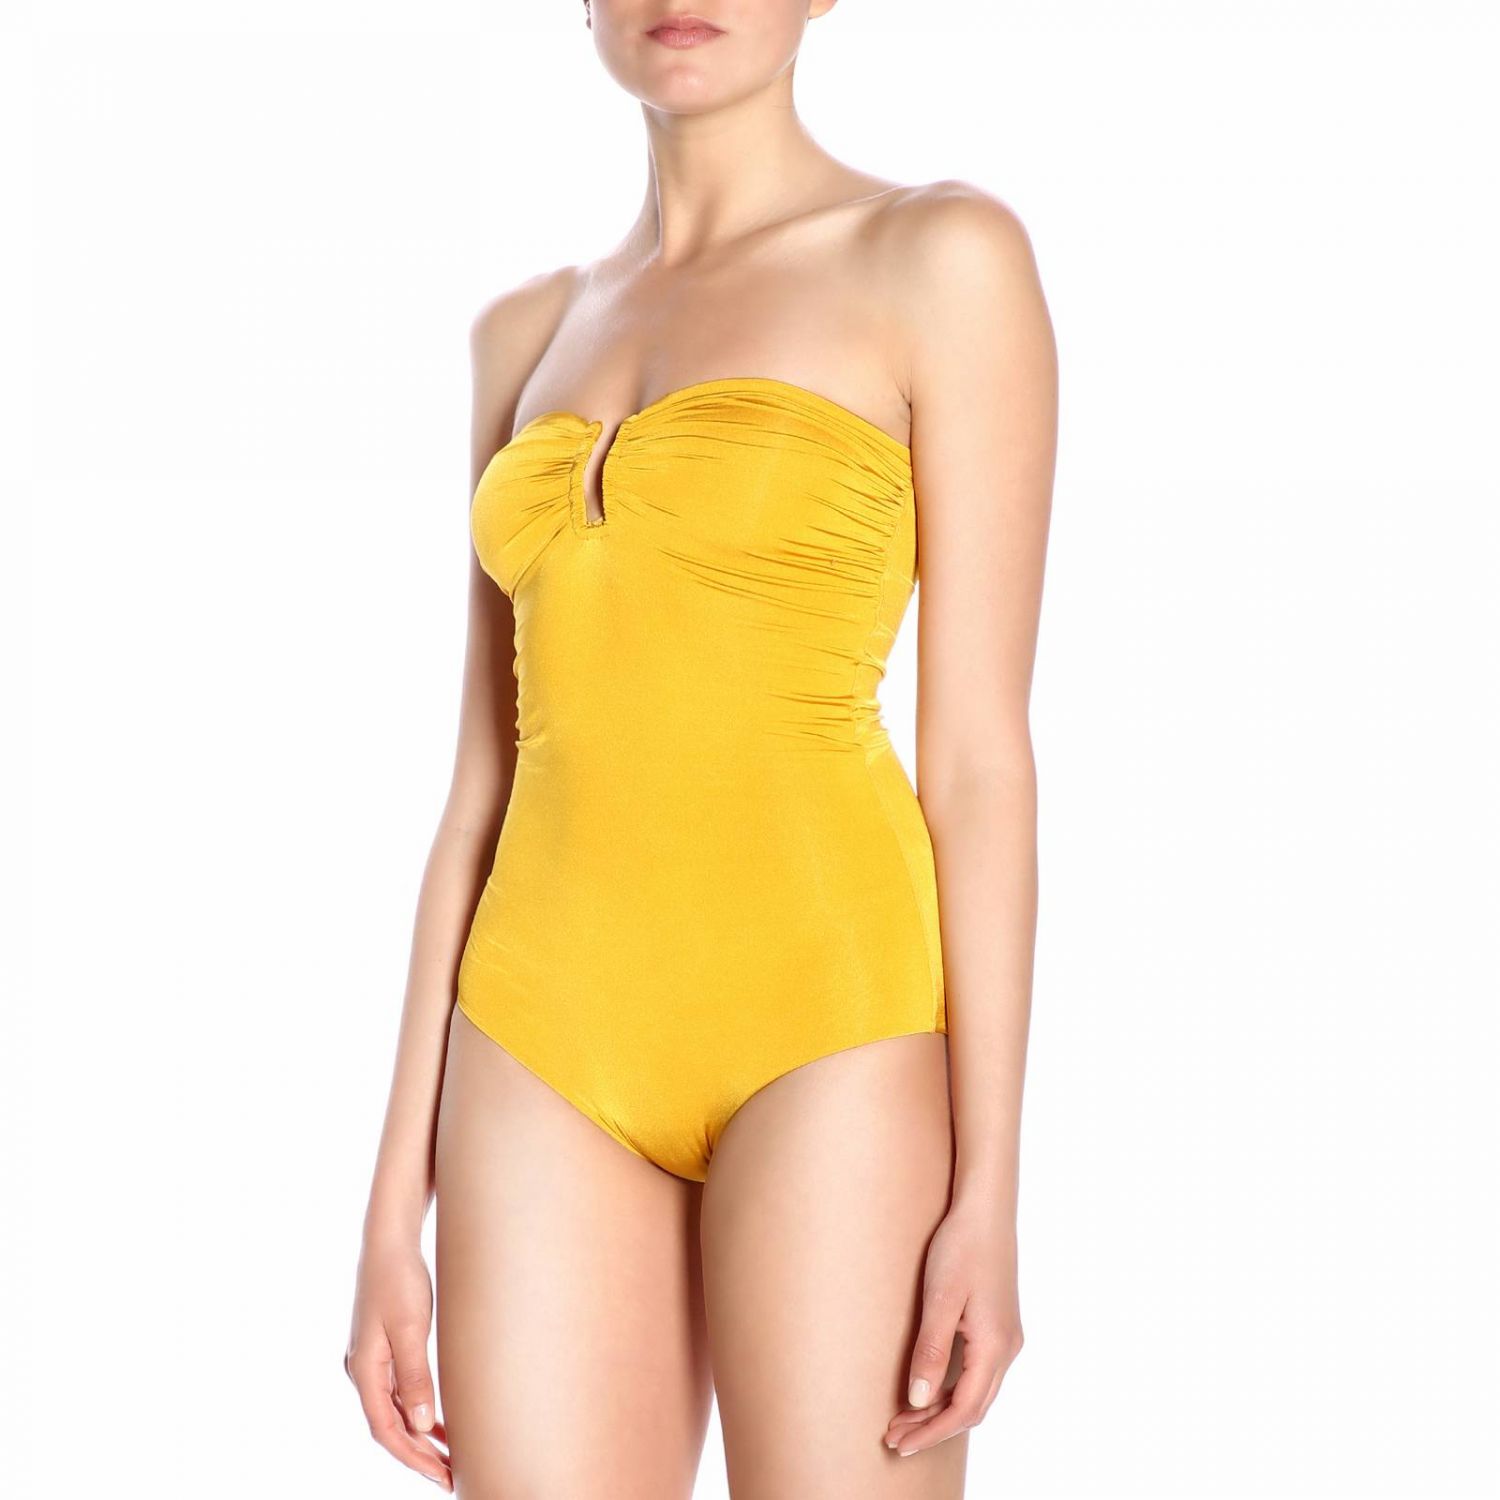 Swimsuit Forte Forte: Swimsuit women Forte Forte yellow 2